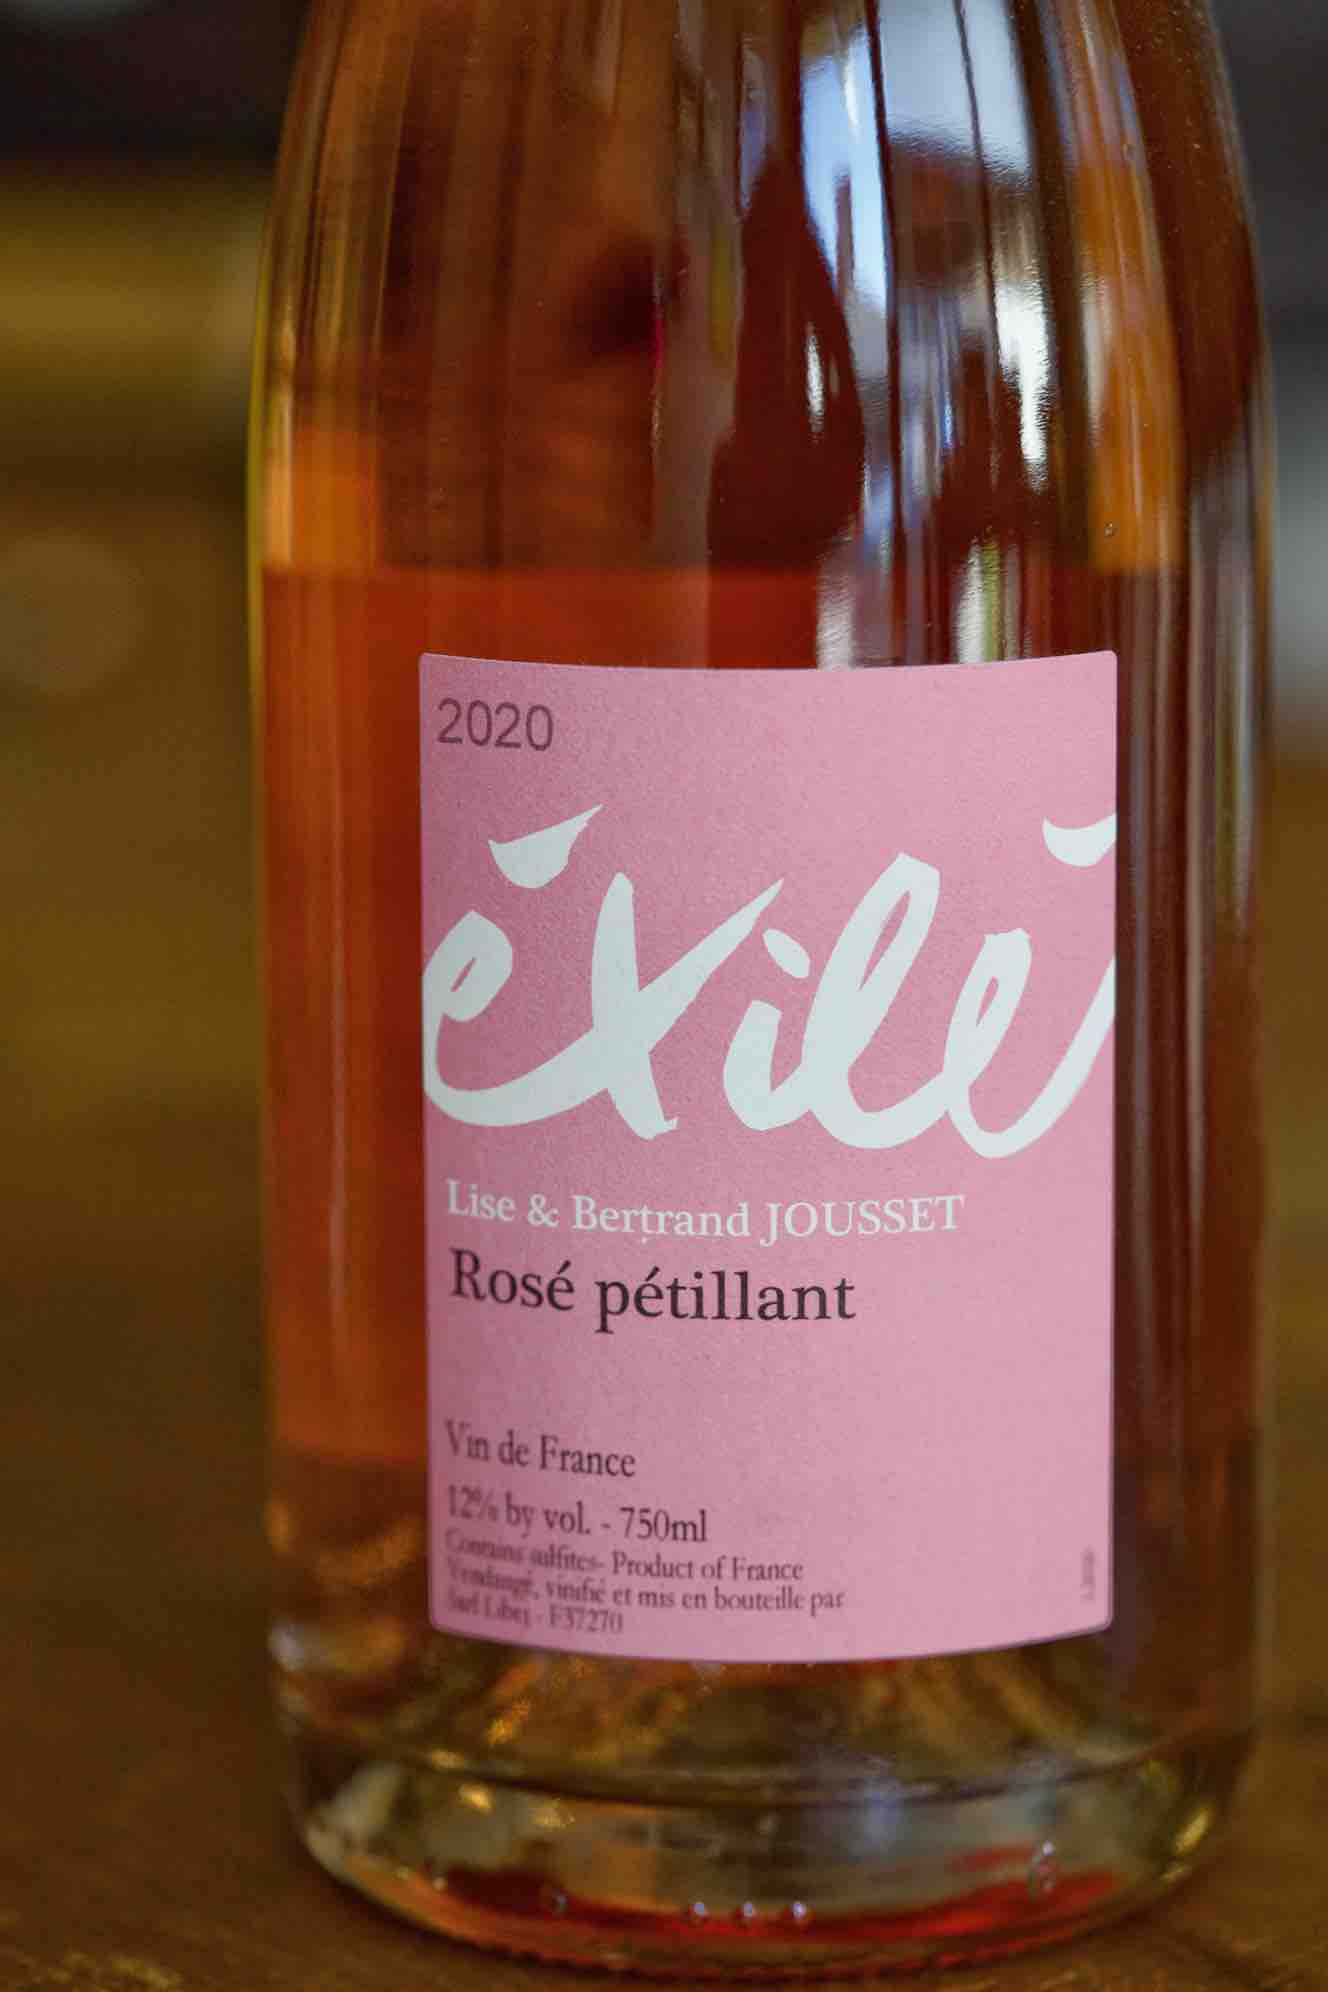 Vin de France Sparkling Rosé Petnat "Exilé", Lise & Bertrand Jousset 2020